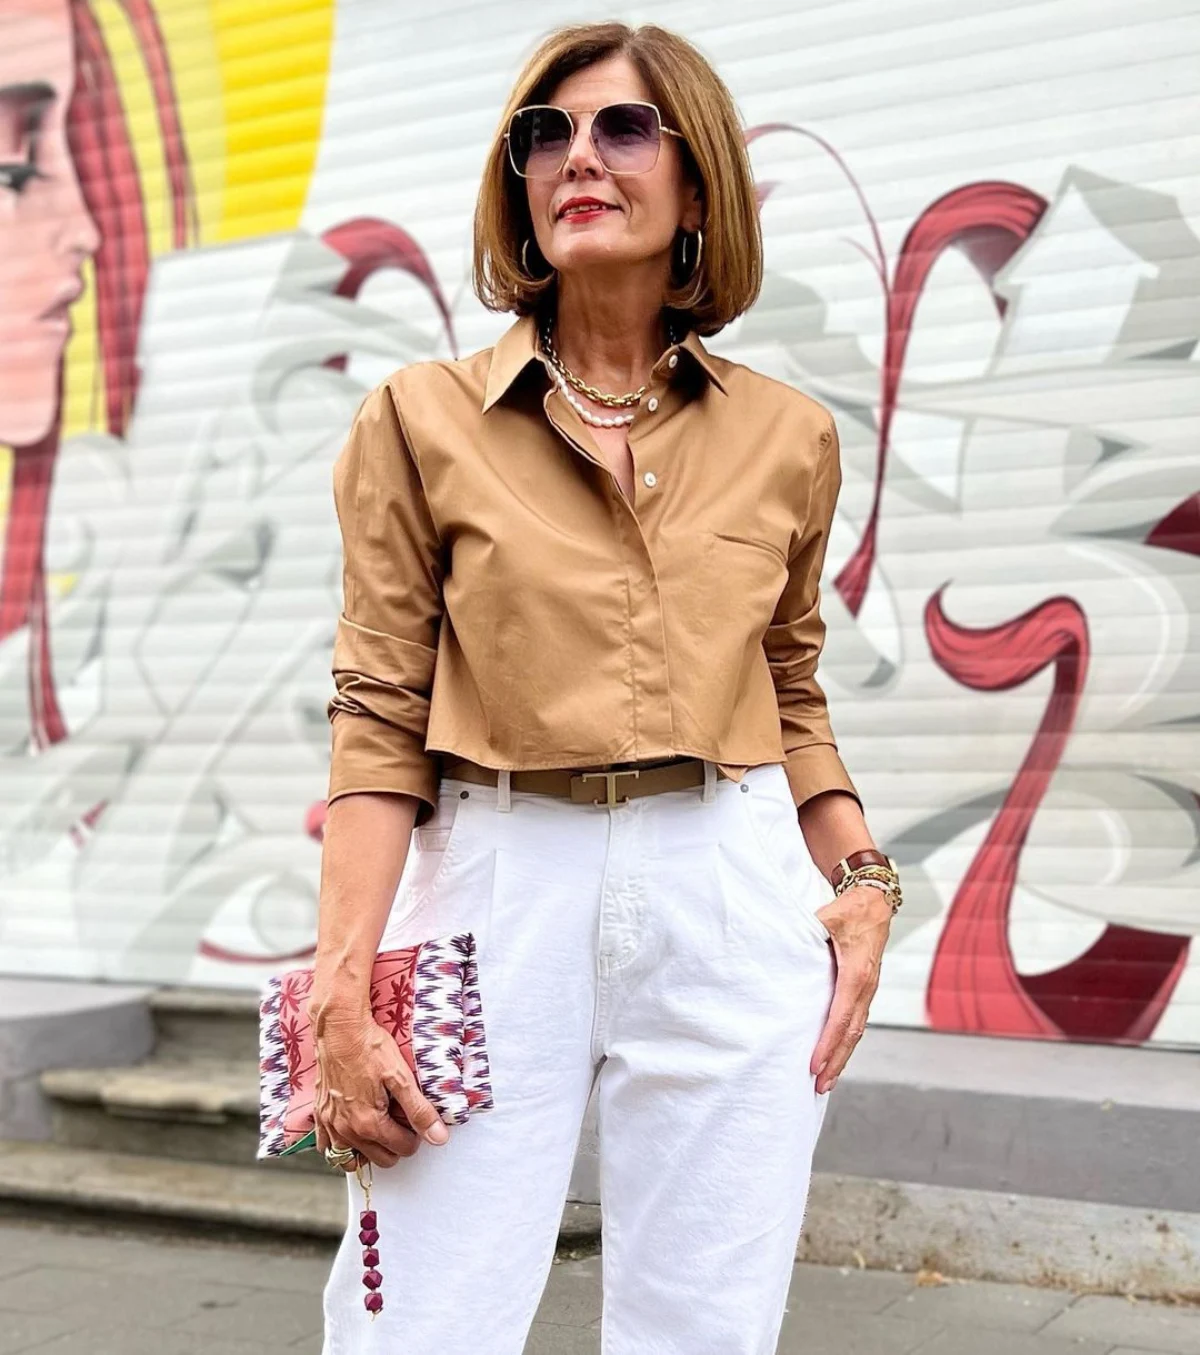 jean blanc chemiser marron pochette tenue d ete femme 60 ans